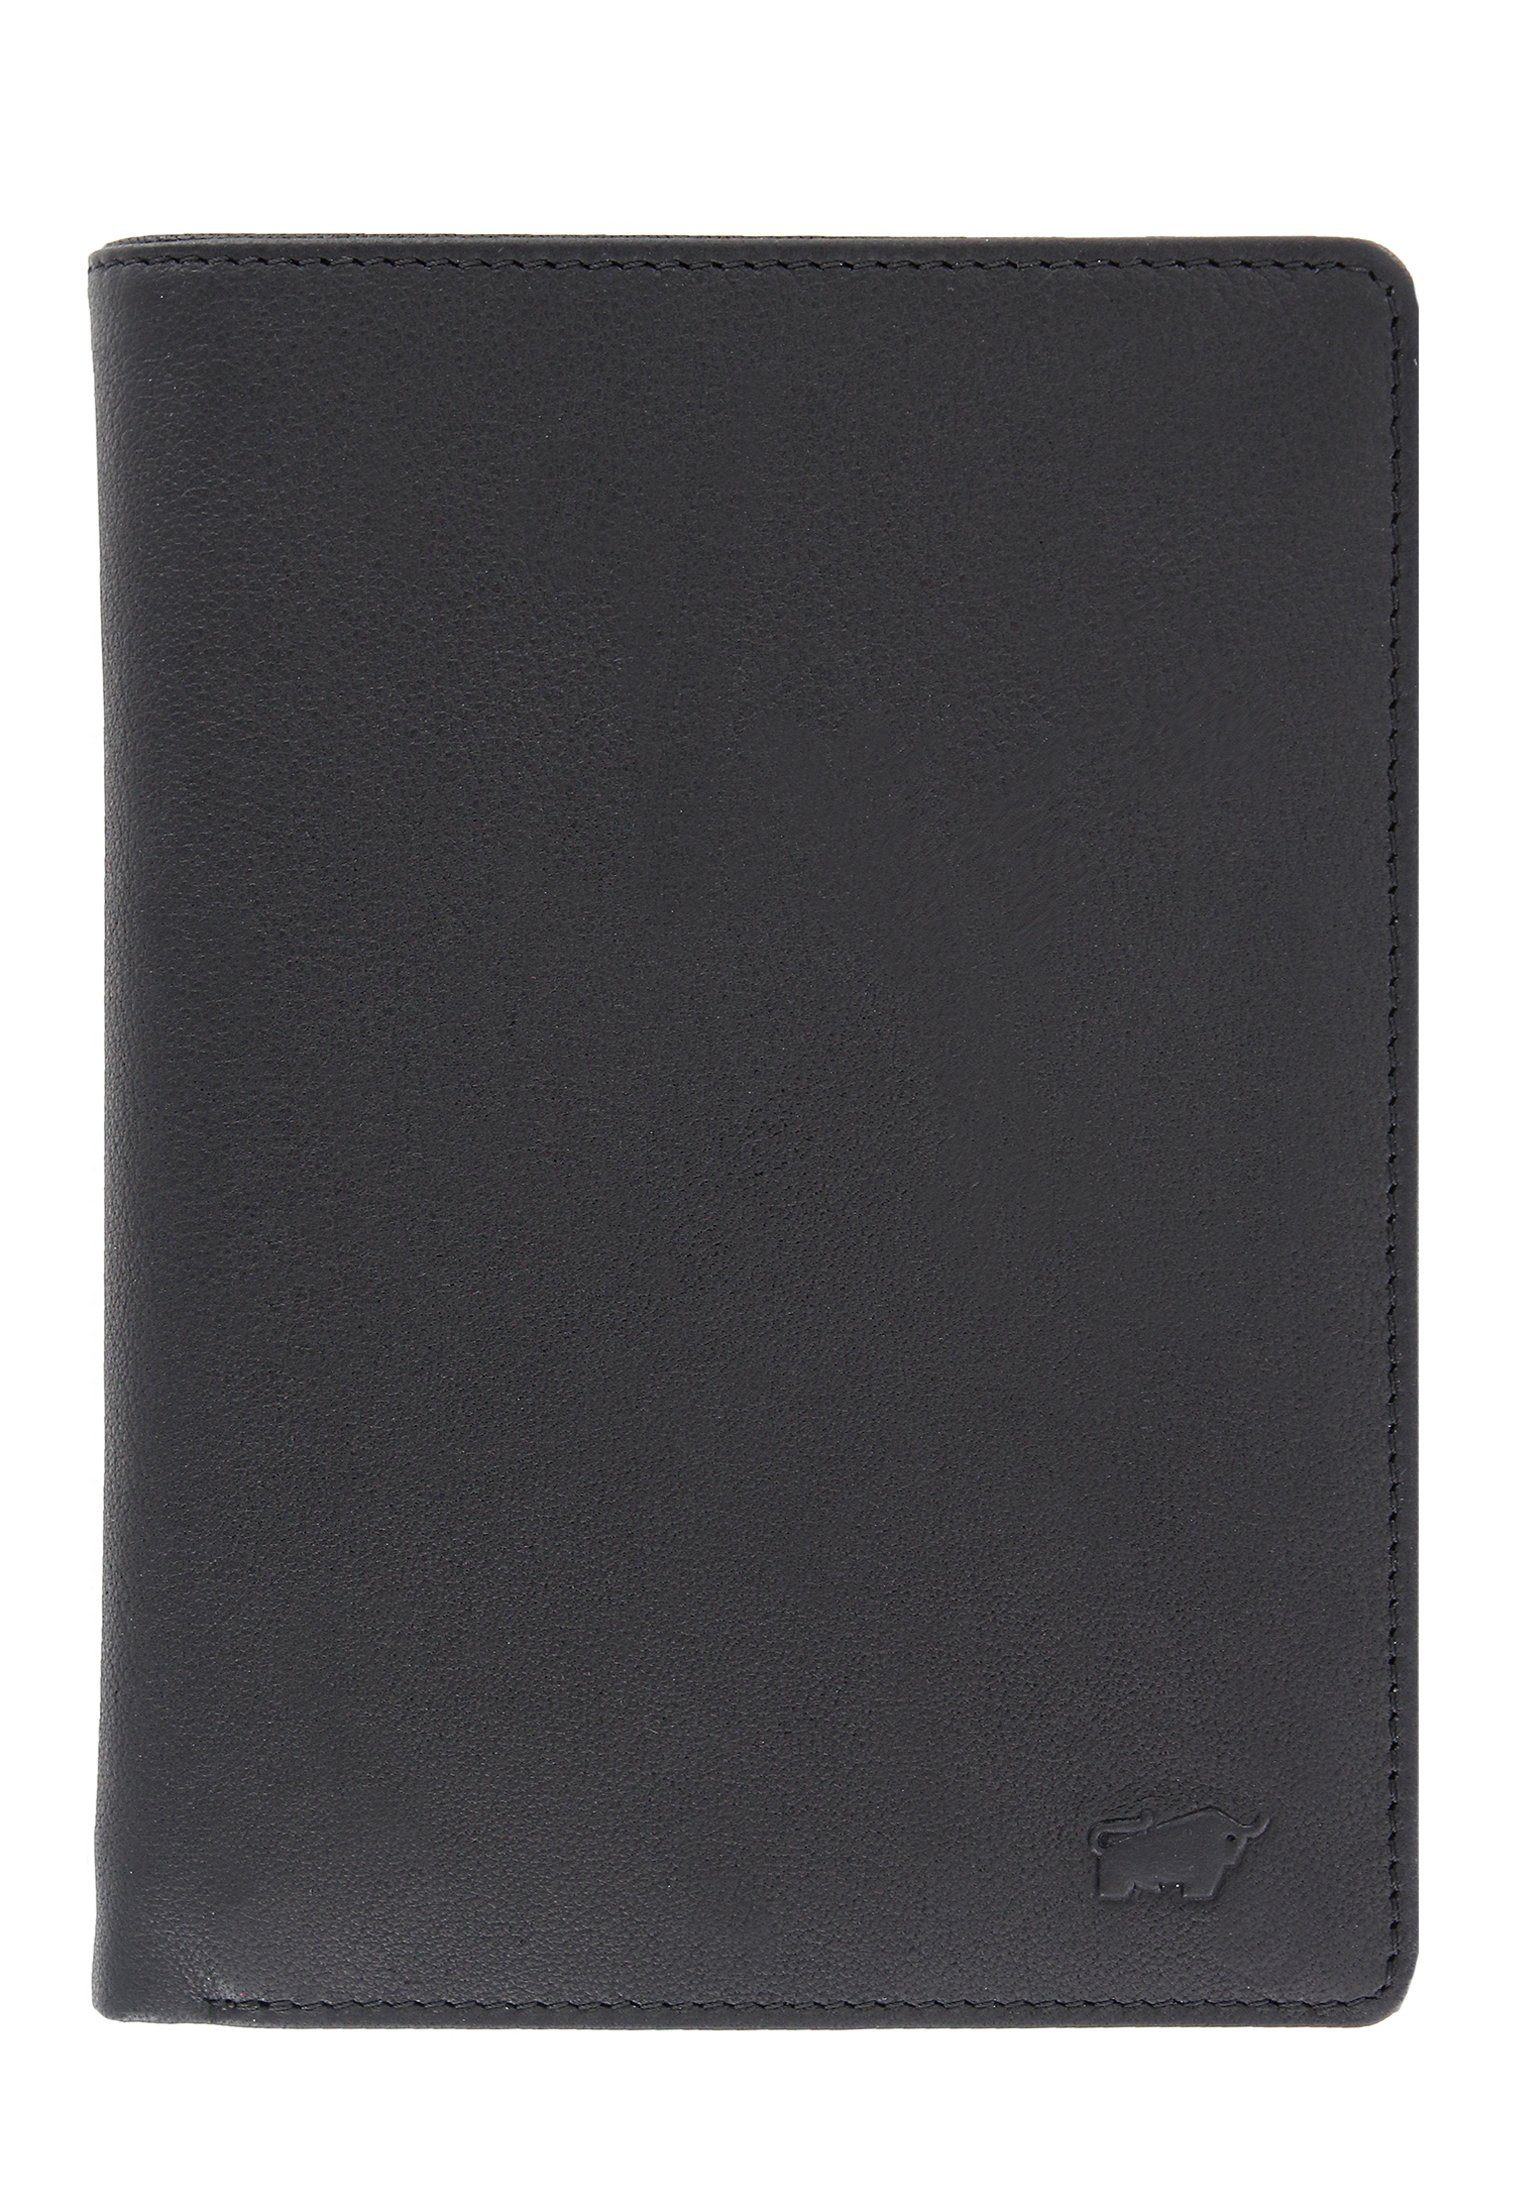 in schwarz, viel Germany Stauraum, ARIZONA 20CS Made Braun Brieftasche 2.0 Büffel Brieftasche mit